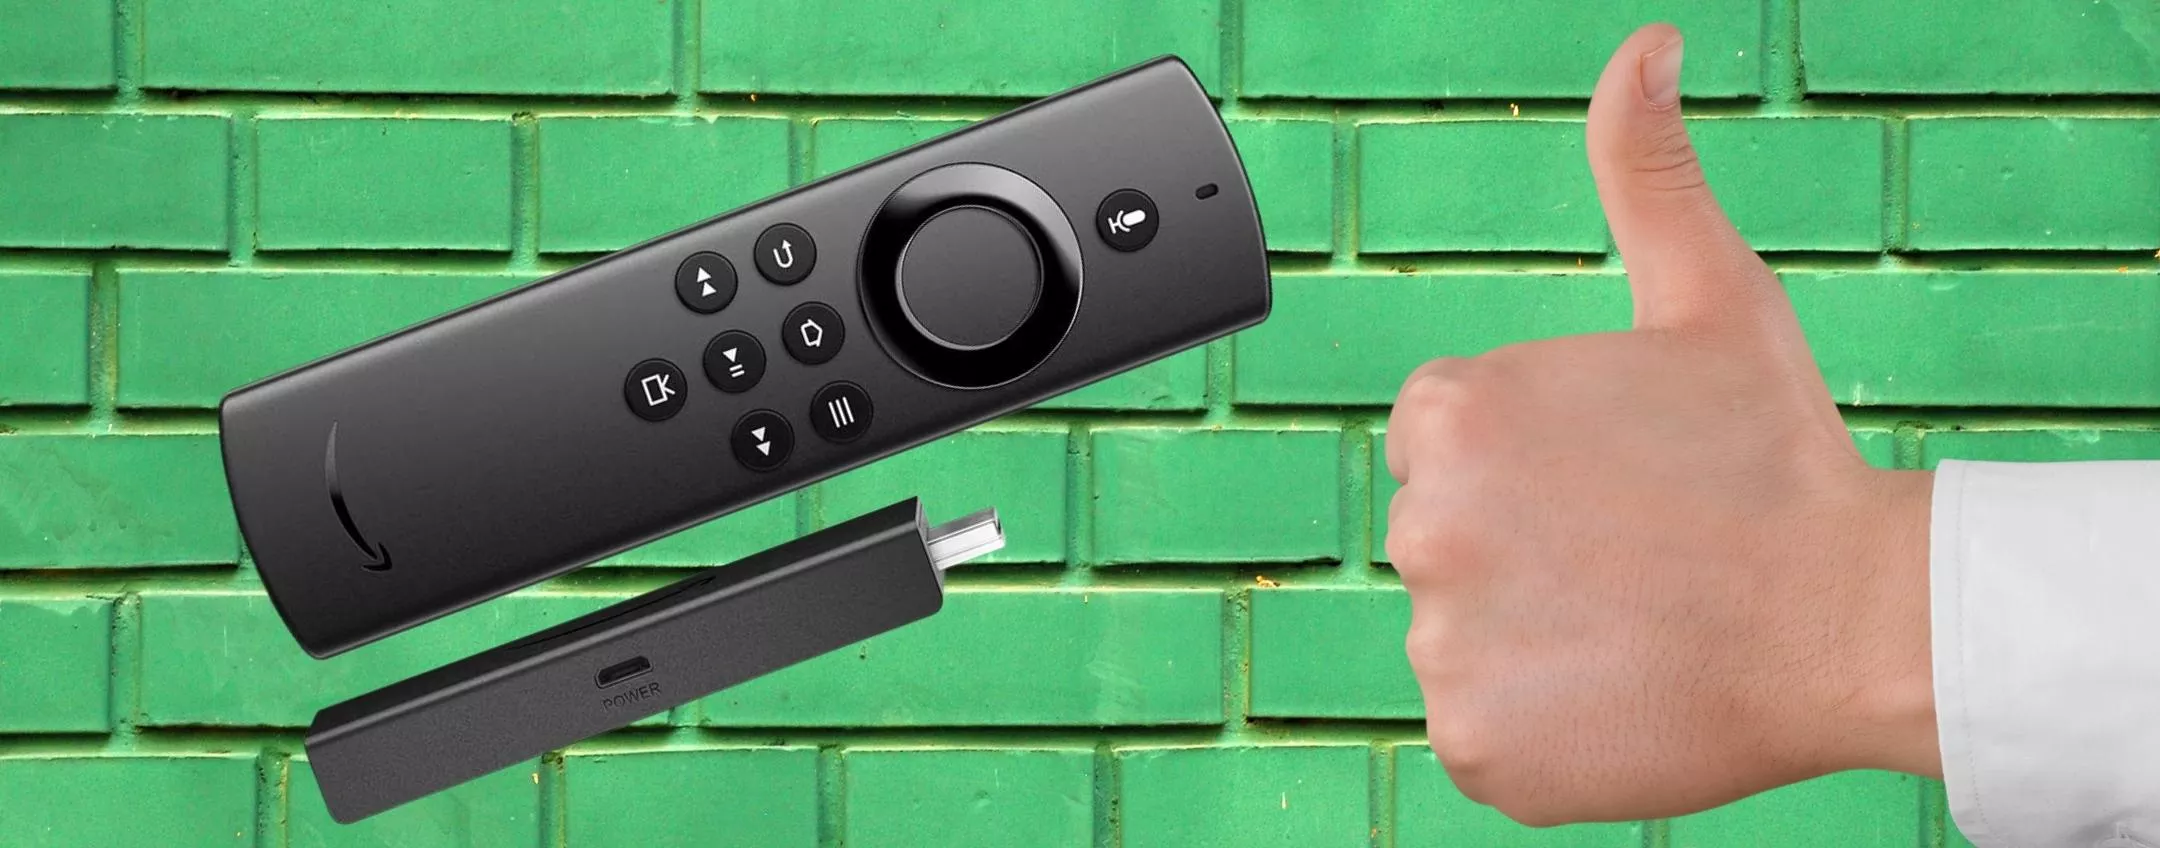 La TV diventa smart in una mossa: ti serve solo una Fire TV Stick